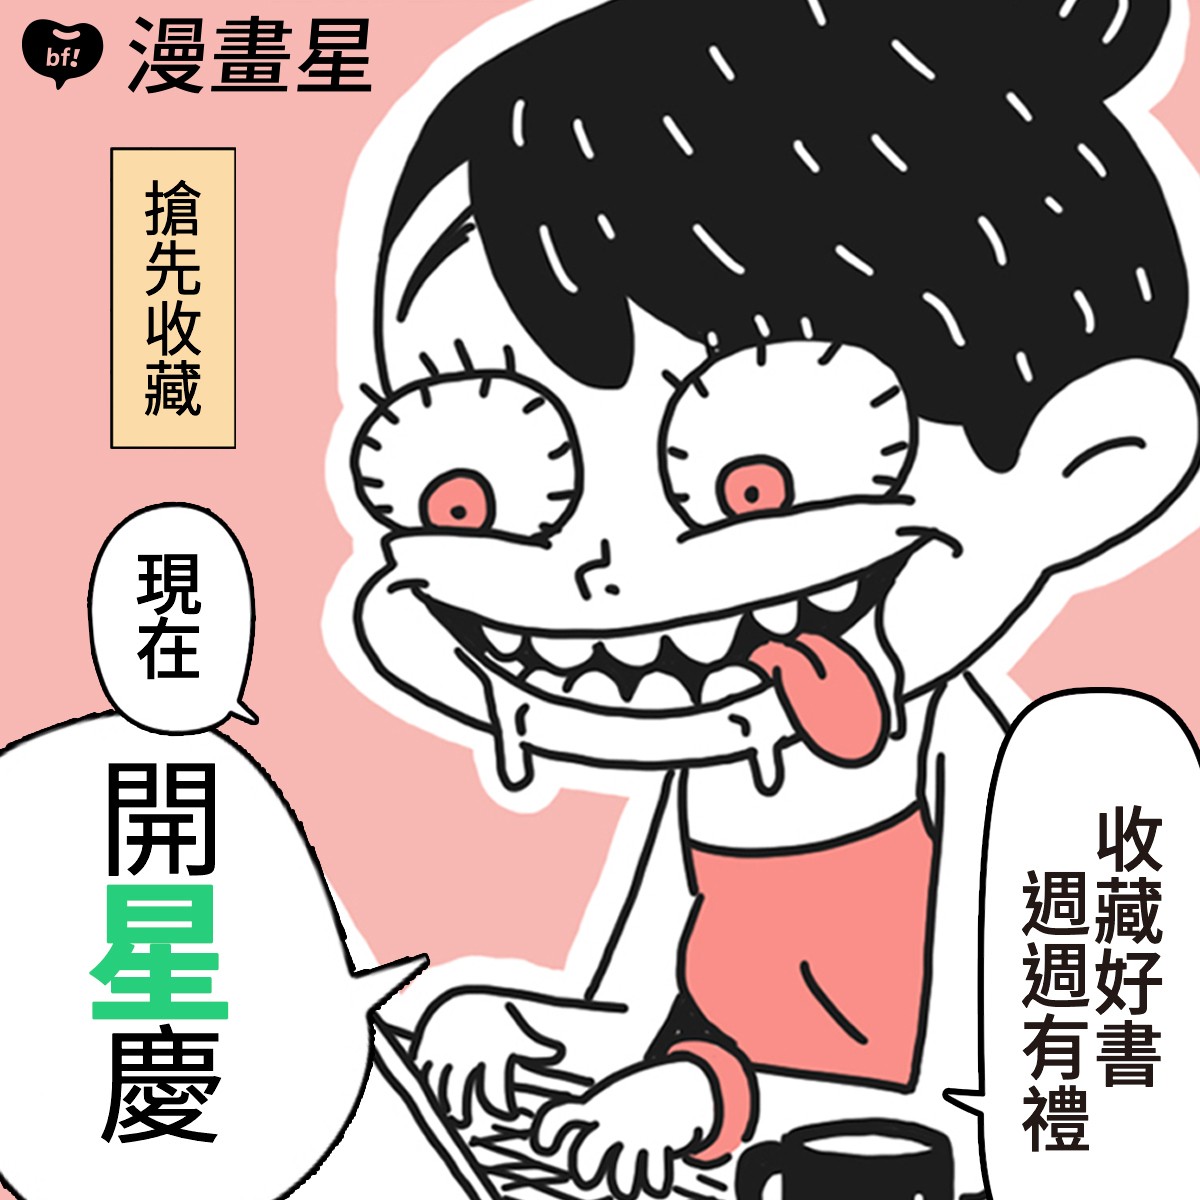 橘子集團推出 beanfun!「漫畫星」挹注五億資金 期許成為台灣原創最佳推手